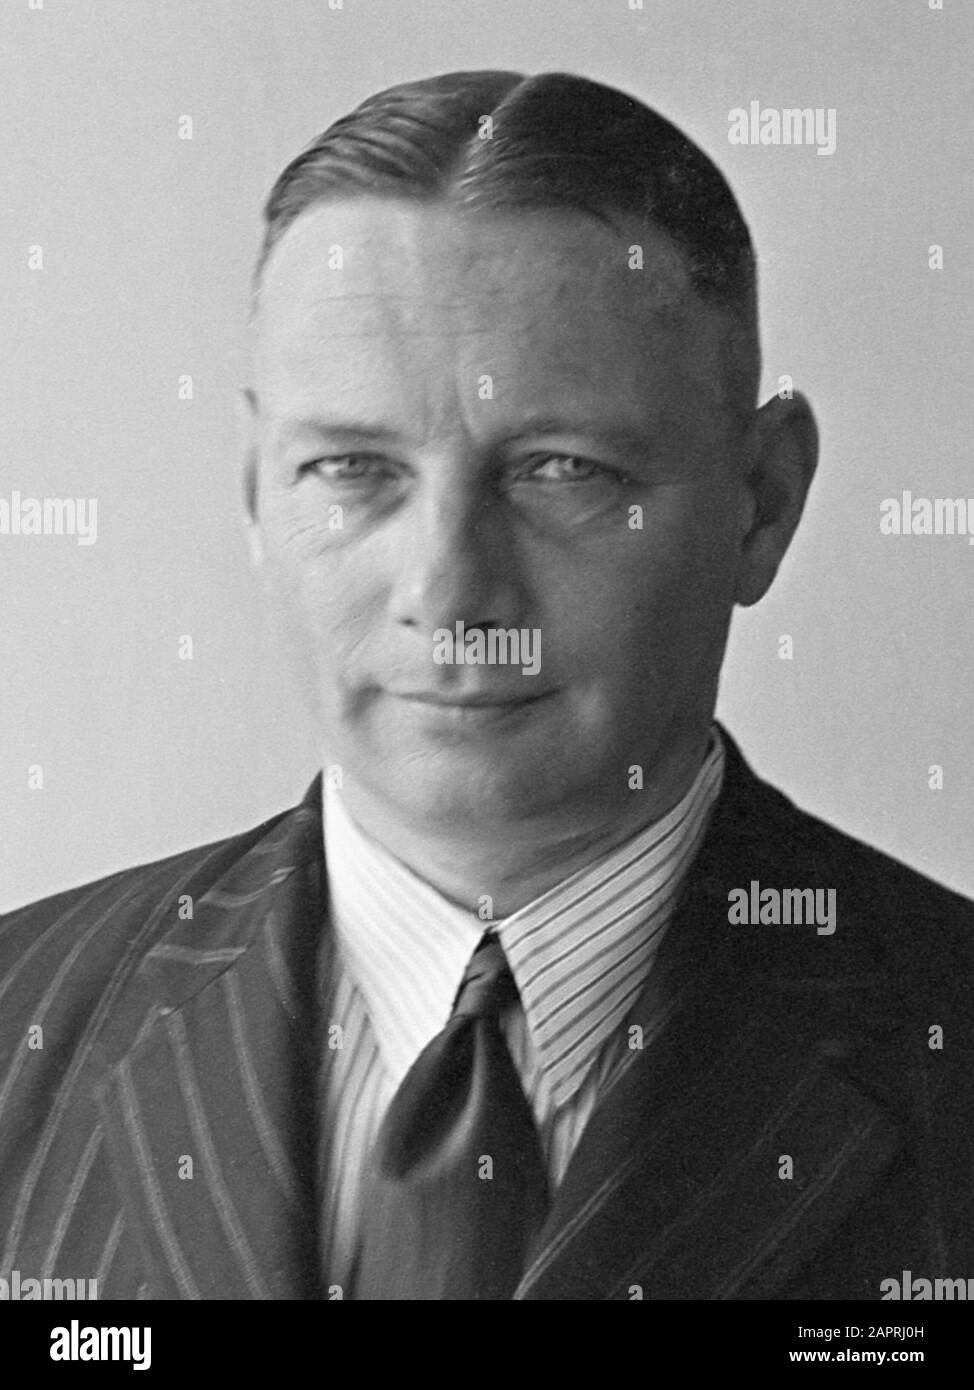 Personeel Kabarett L.L. en opname Generaal Spoor. Generaal S.H. Spoor in Burgerkleding Maart 1948 Stockfoto